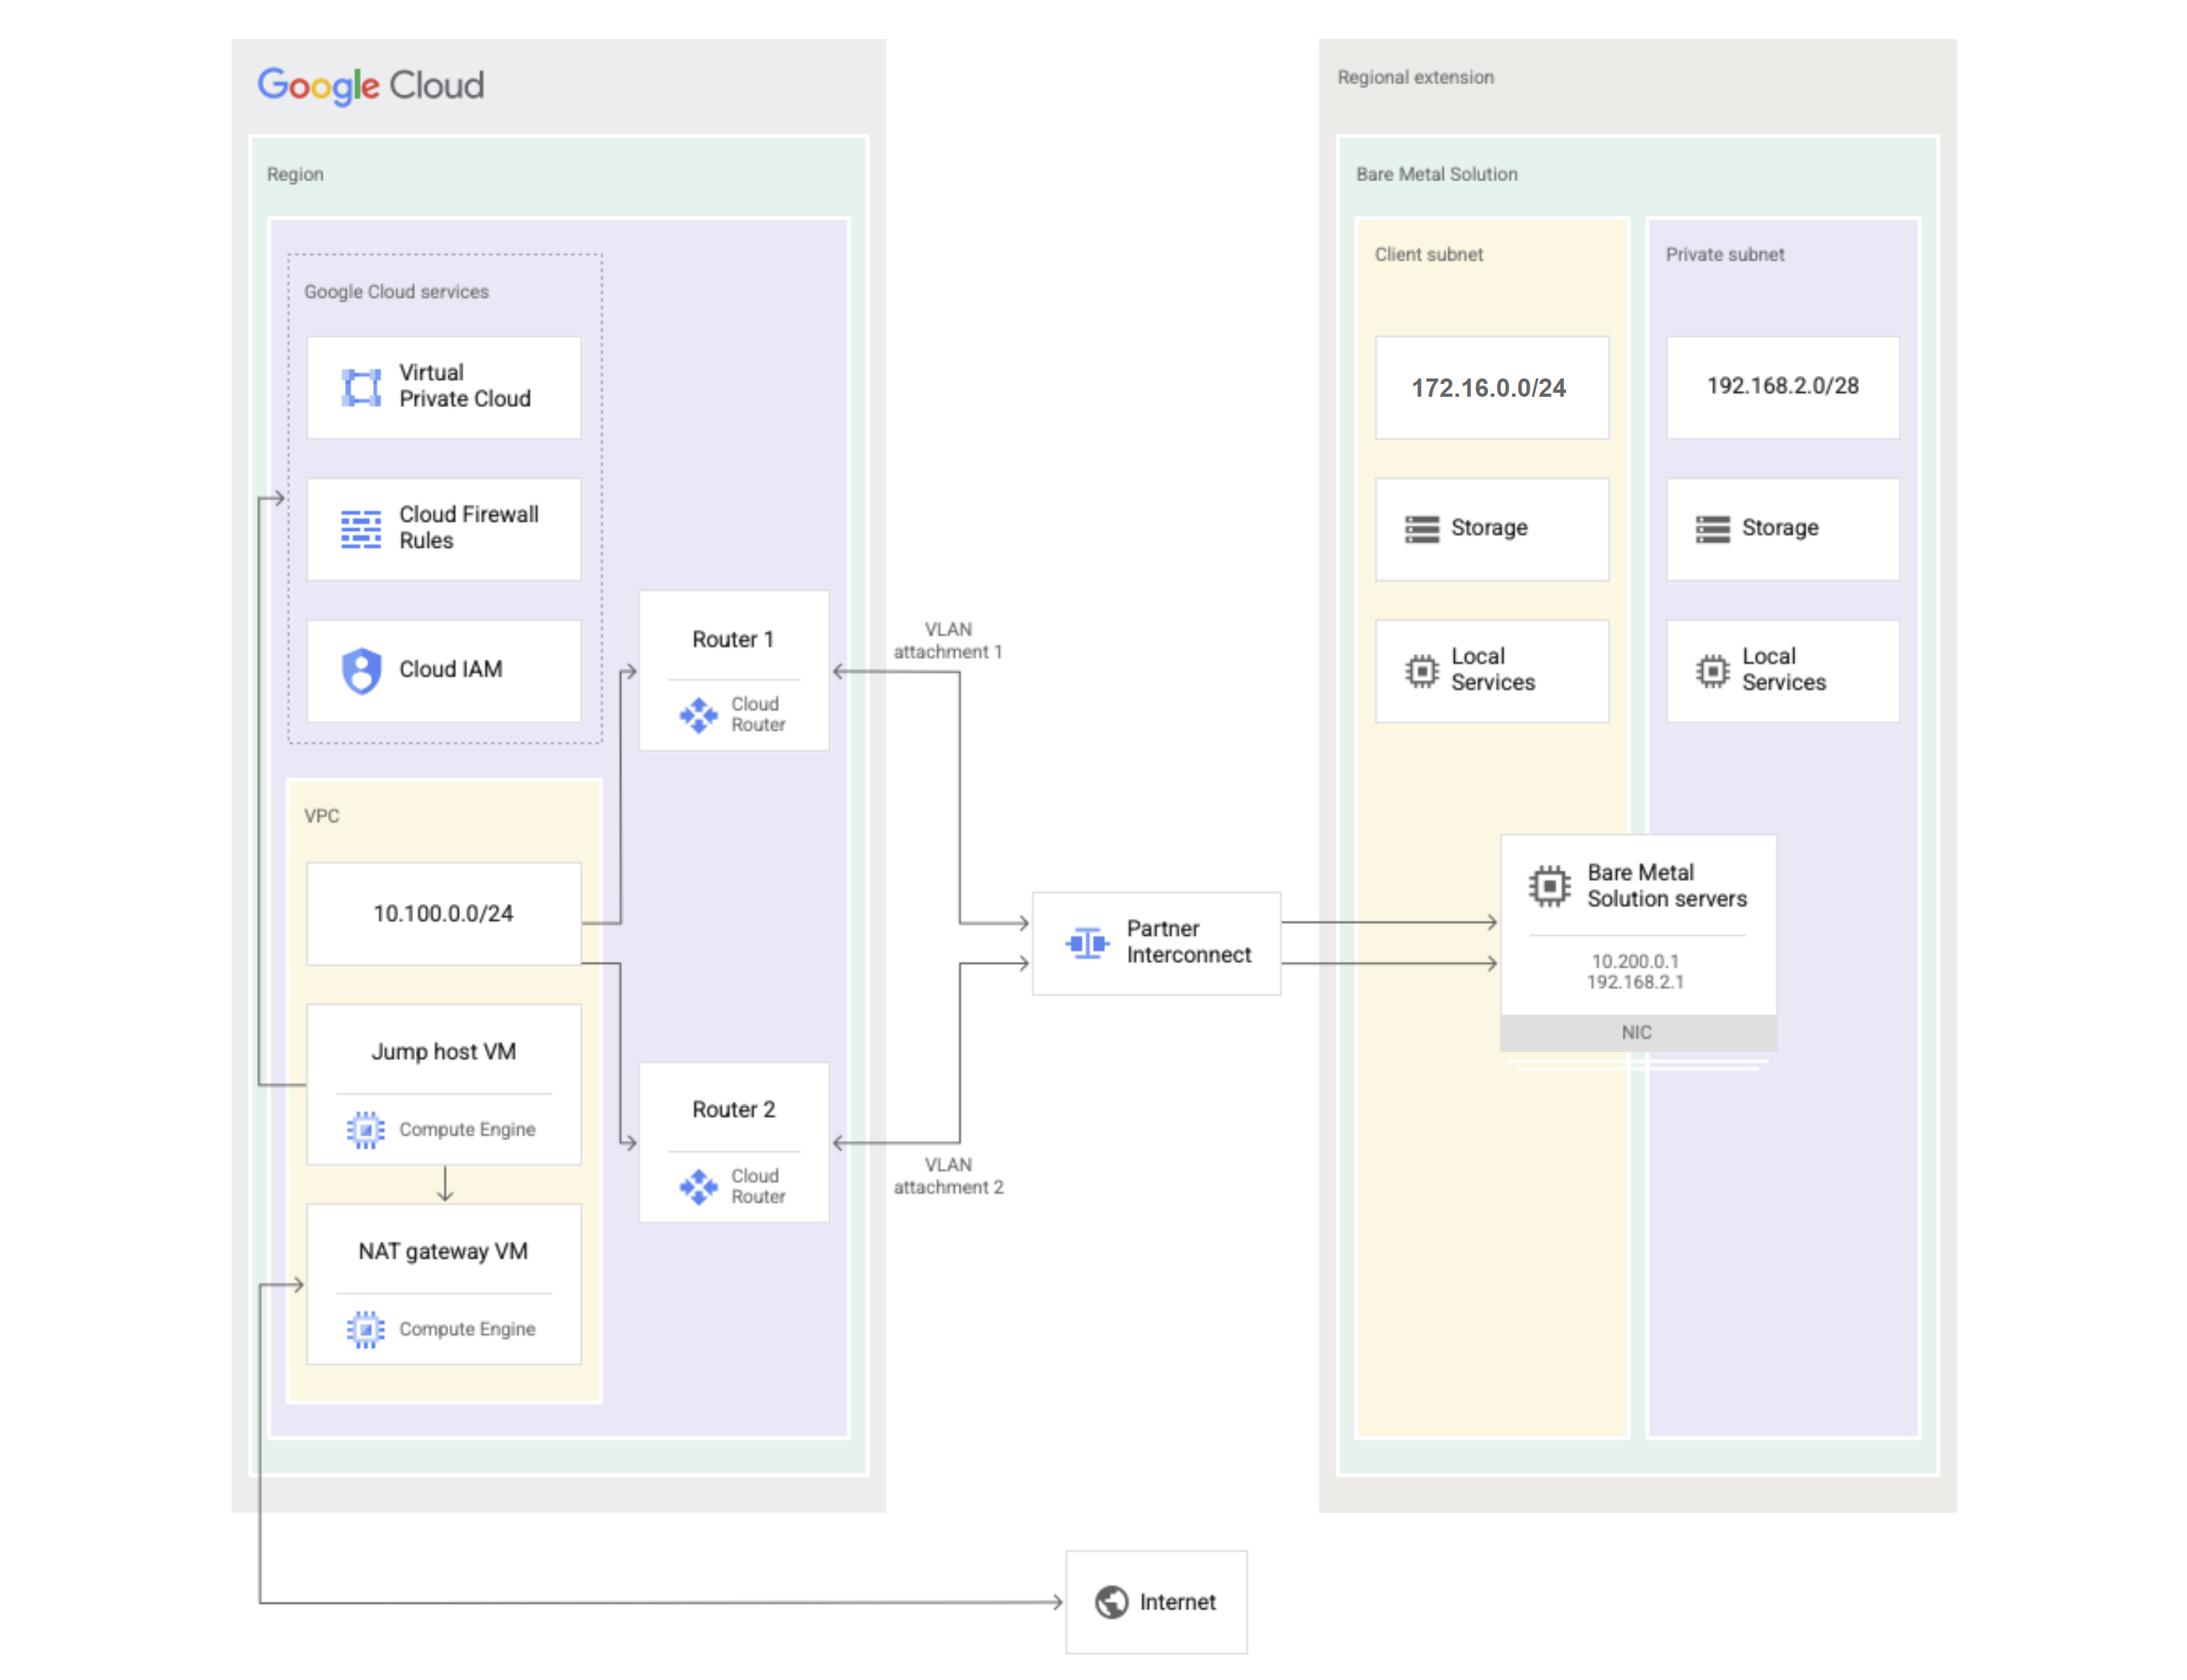 Diagrama de la solución Bare Metal que muestra qué componentes están en Google Cloud y cuáles están en la extensión regional de la solución Bare Metal.